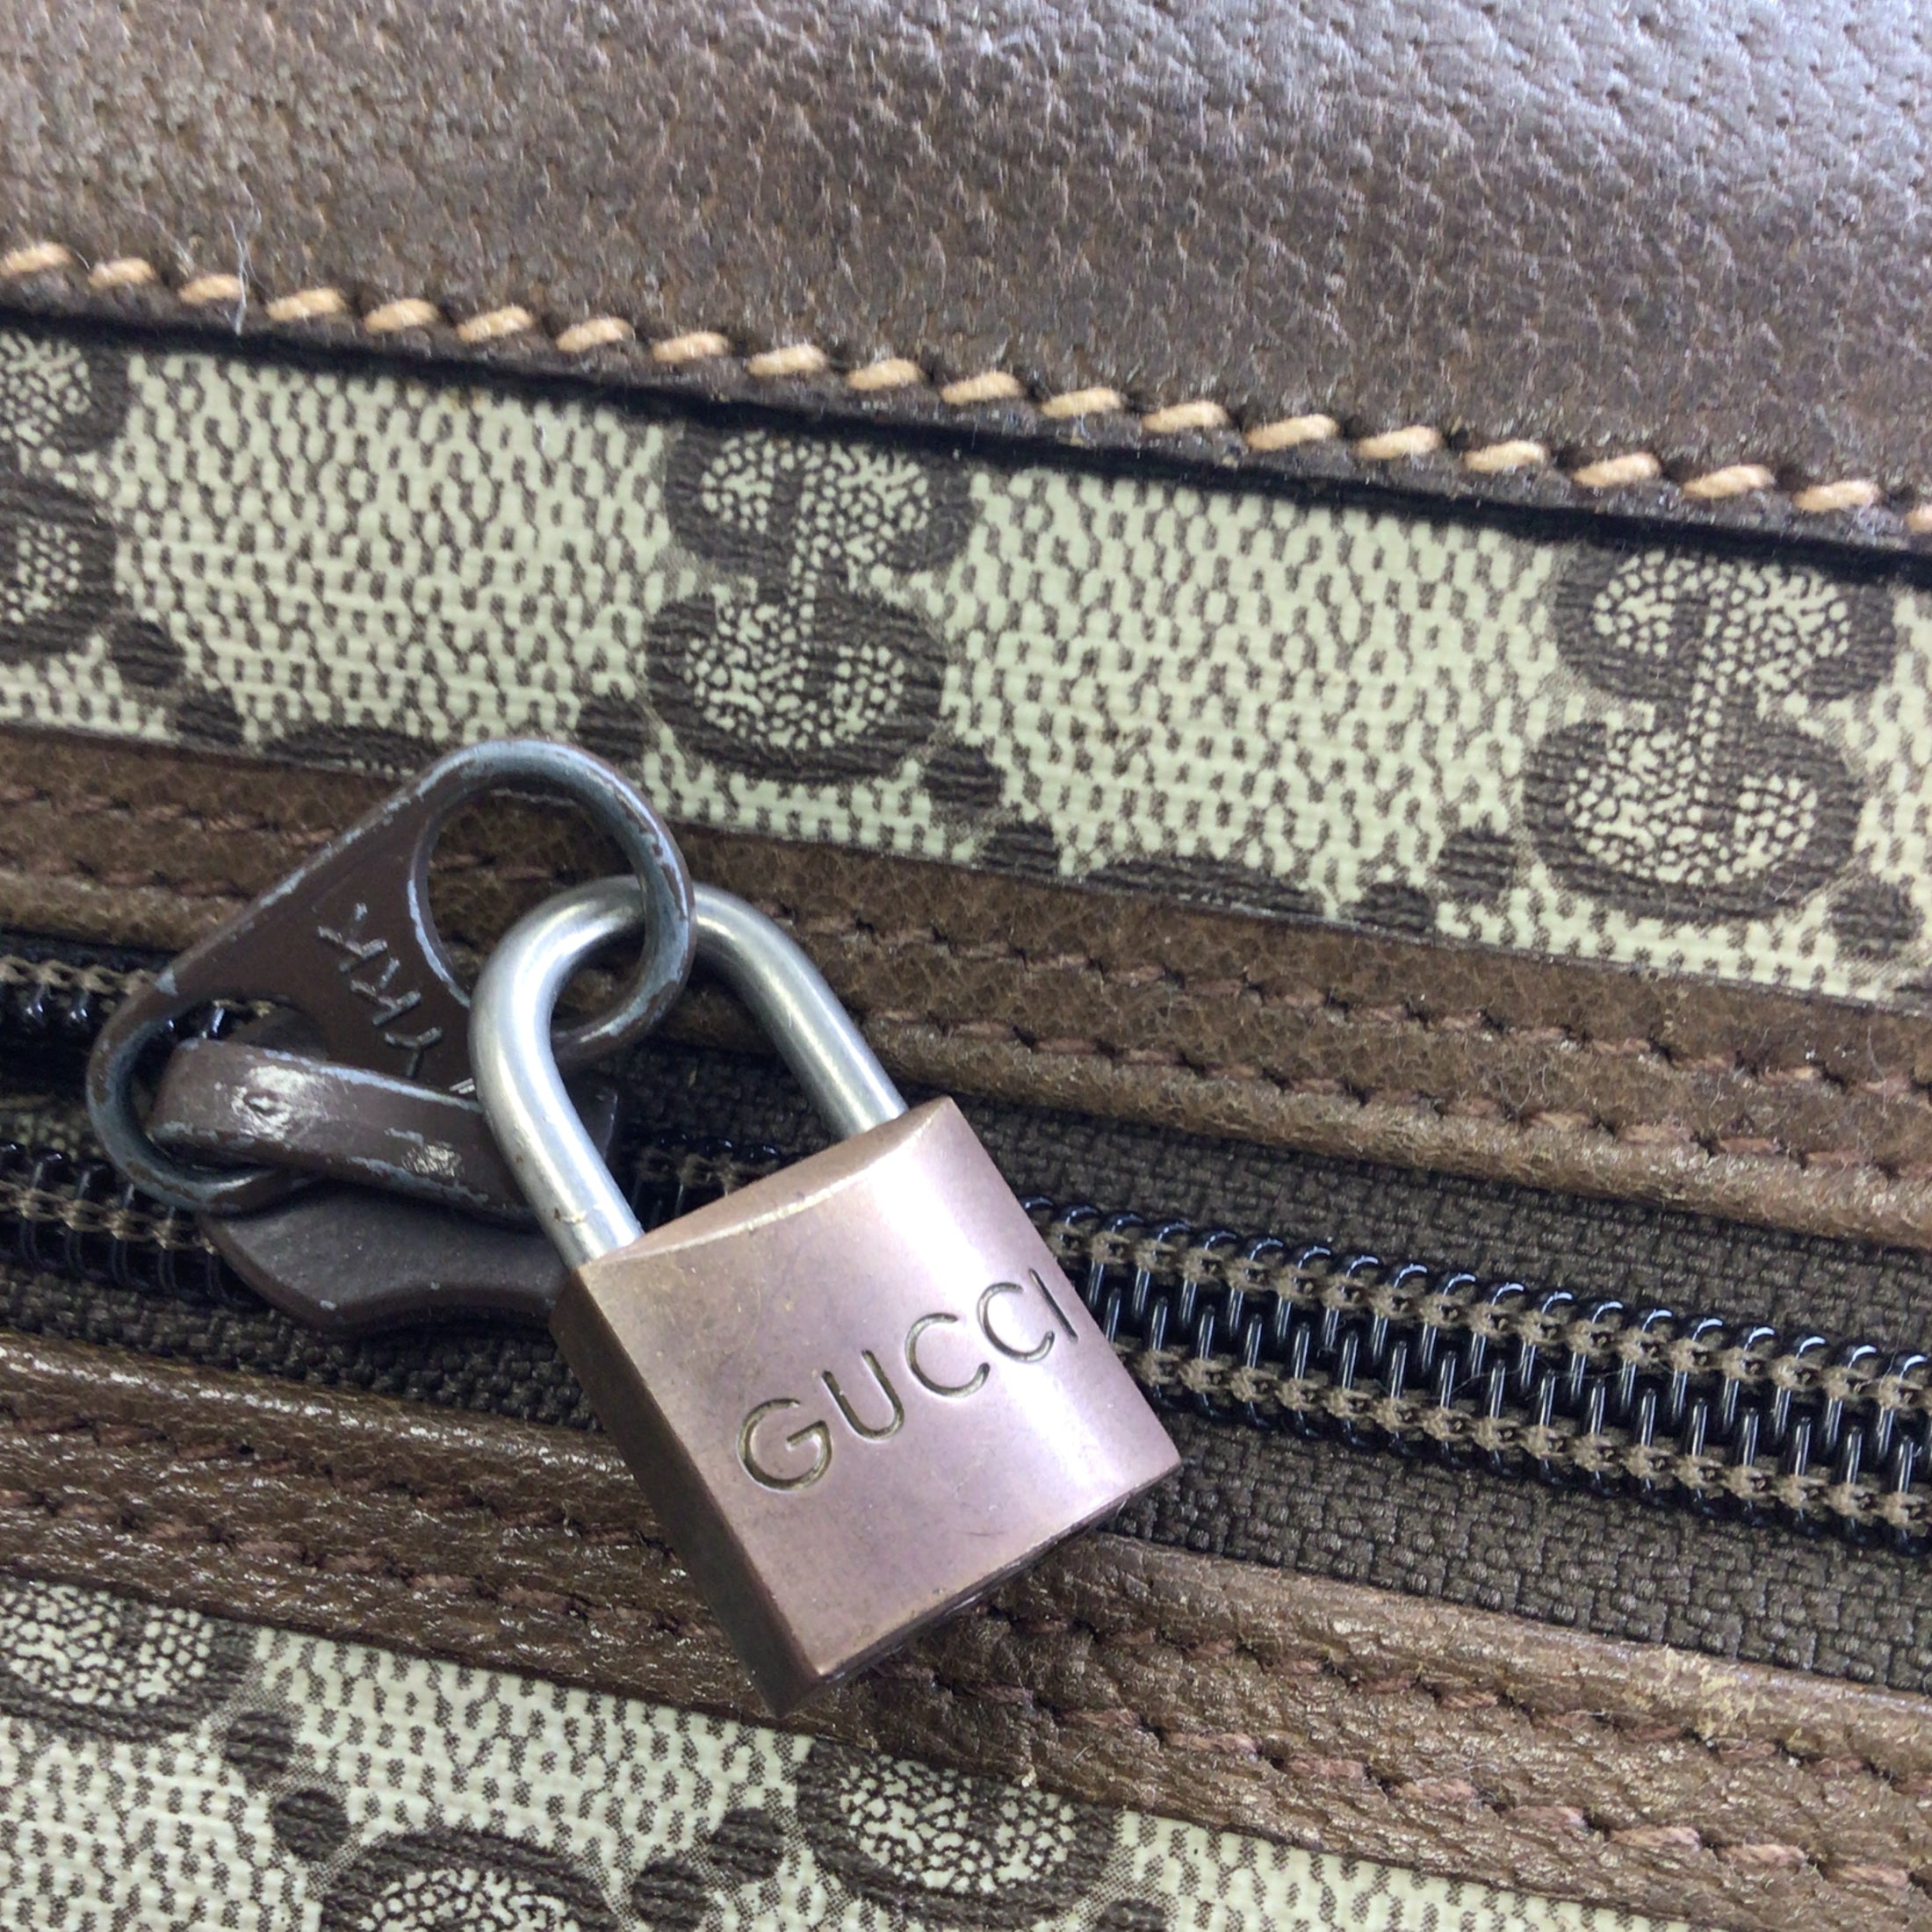 Gucci Beige Multi GG Supreme Travel Suitcase